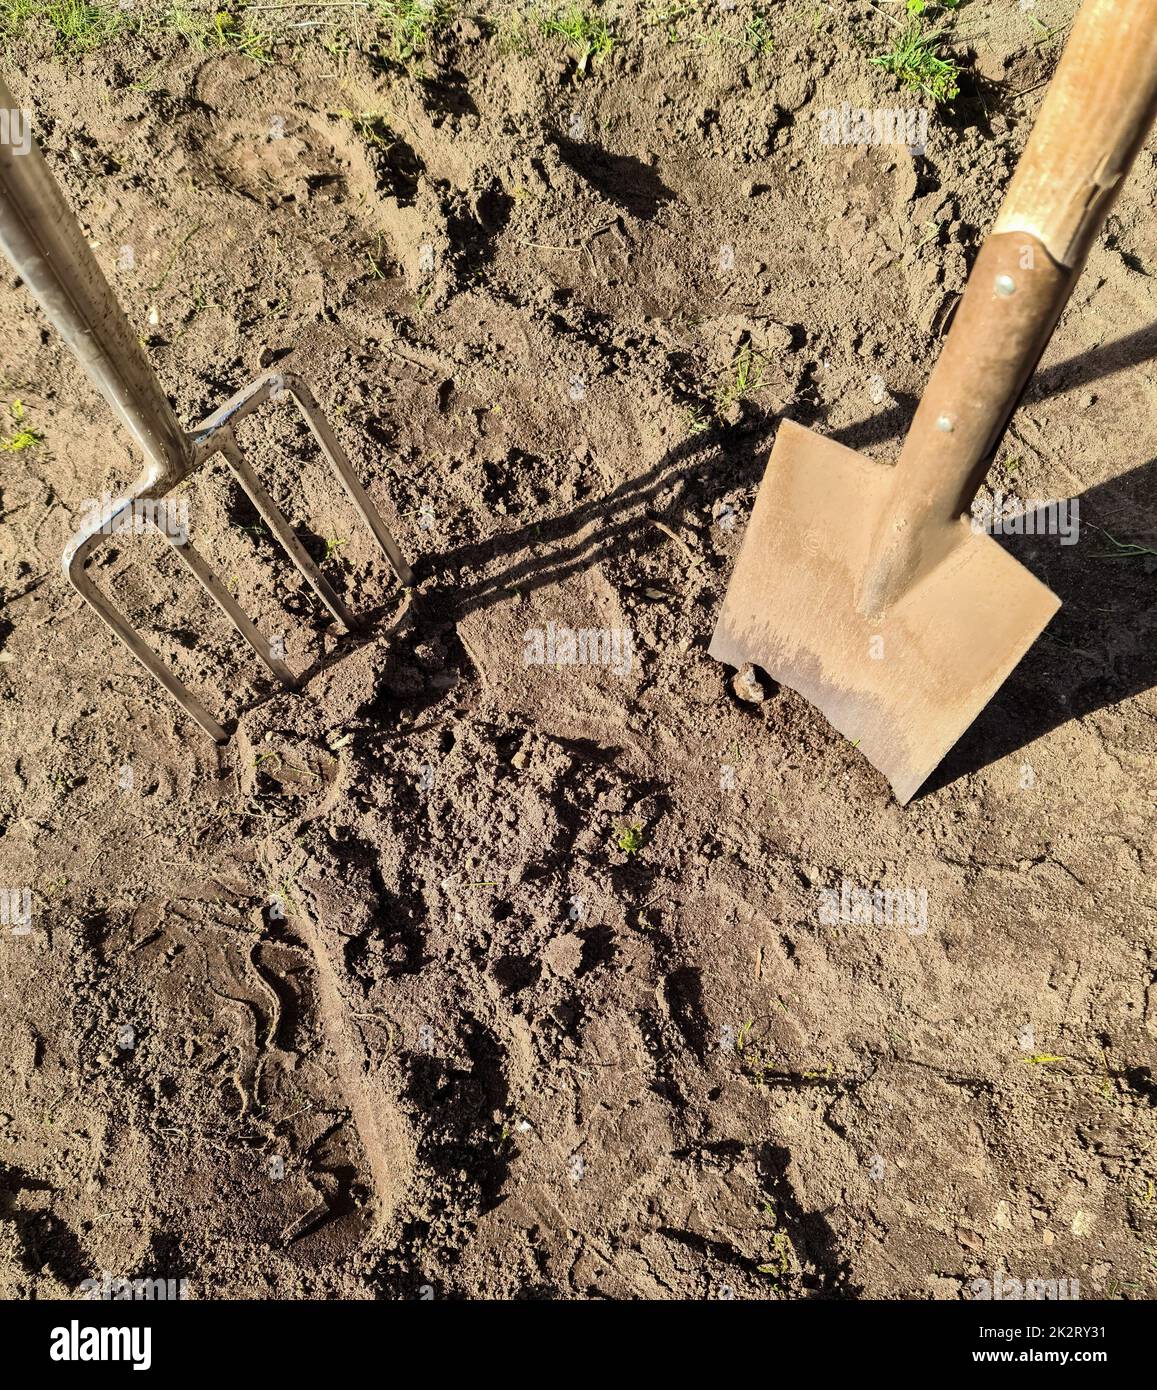 Attrezzi da giardino come una pala e una forchetta su terreno terreno appena scavato. Foto Stock